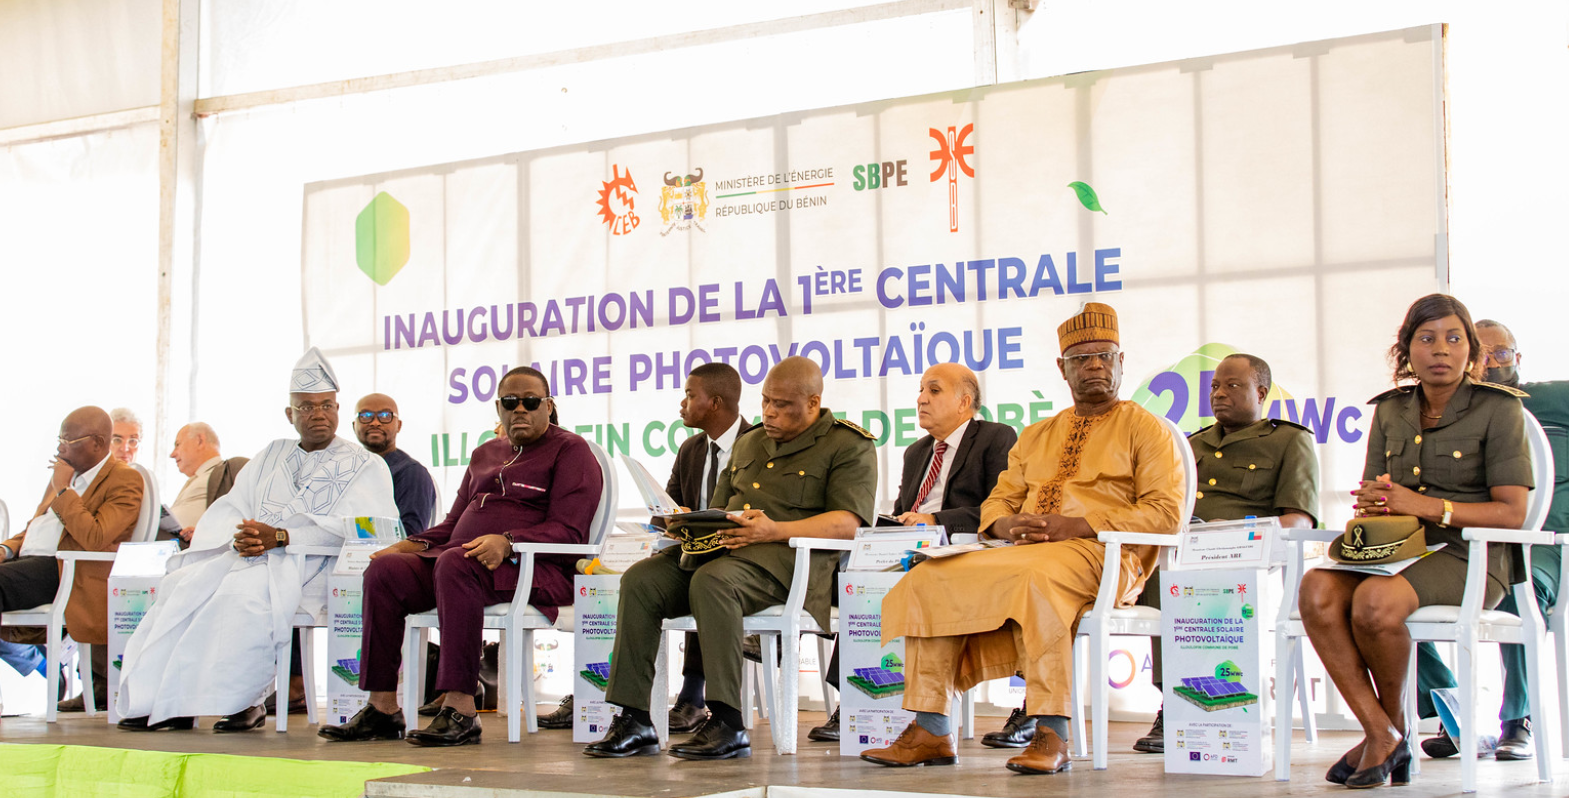 Inauguration de la Centrale solaire photovoltaïque 25 MWc d’Illoulofin : Le Bénin poursuit sa marche vers l’autonomie énergétique avec le soutien de l’AFD